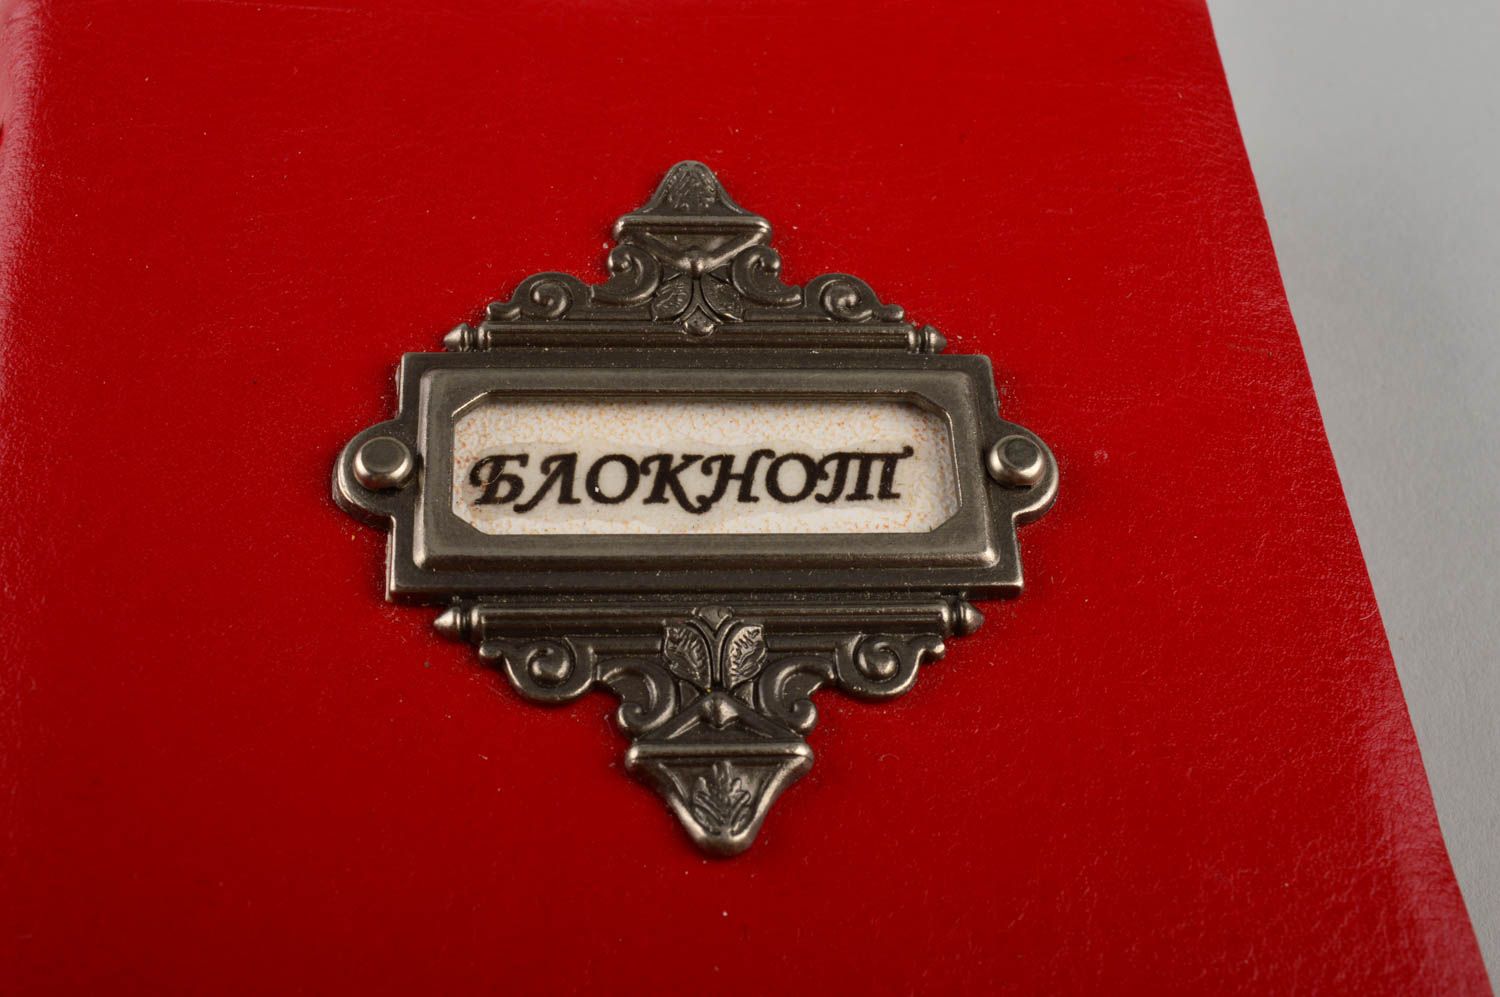 Bloc de notas hecho a mano rojo elegante agenda personalizada regalo original foto 5